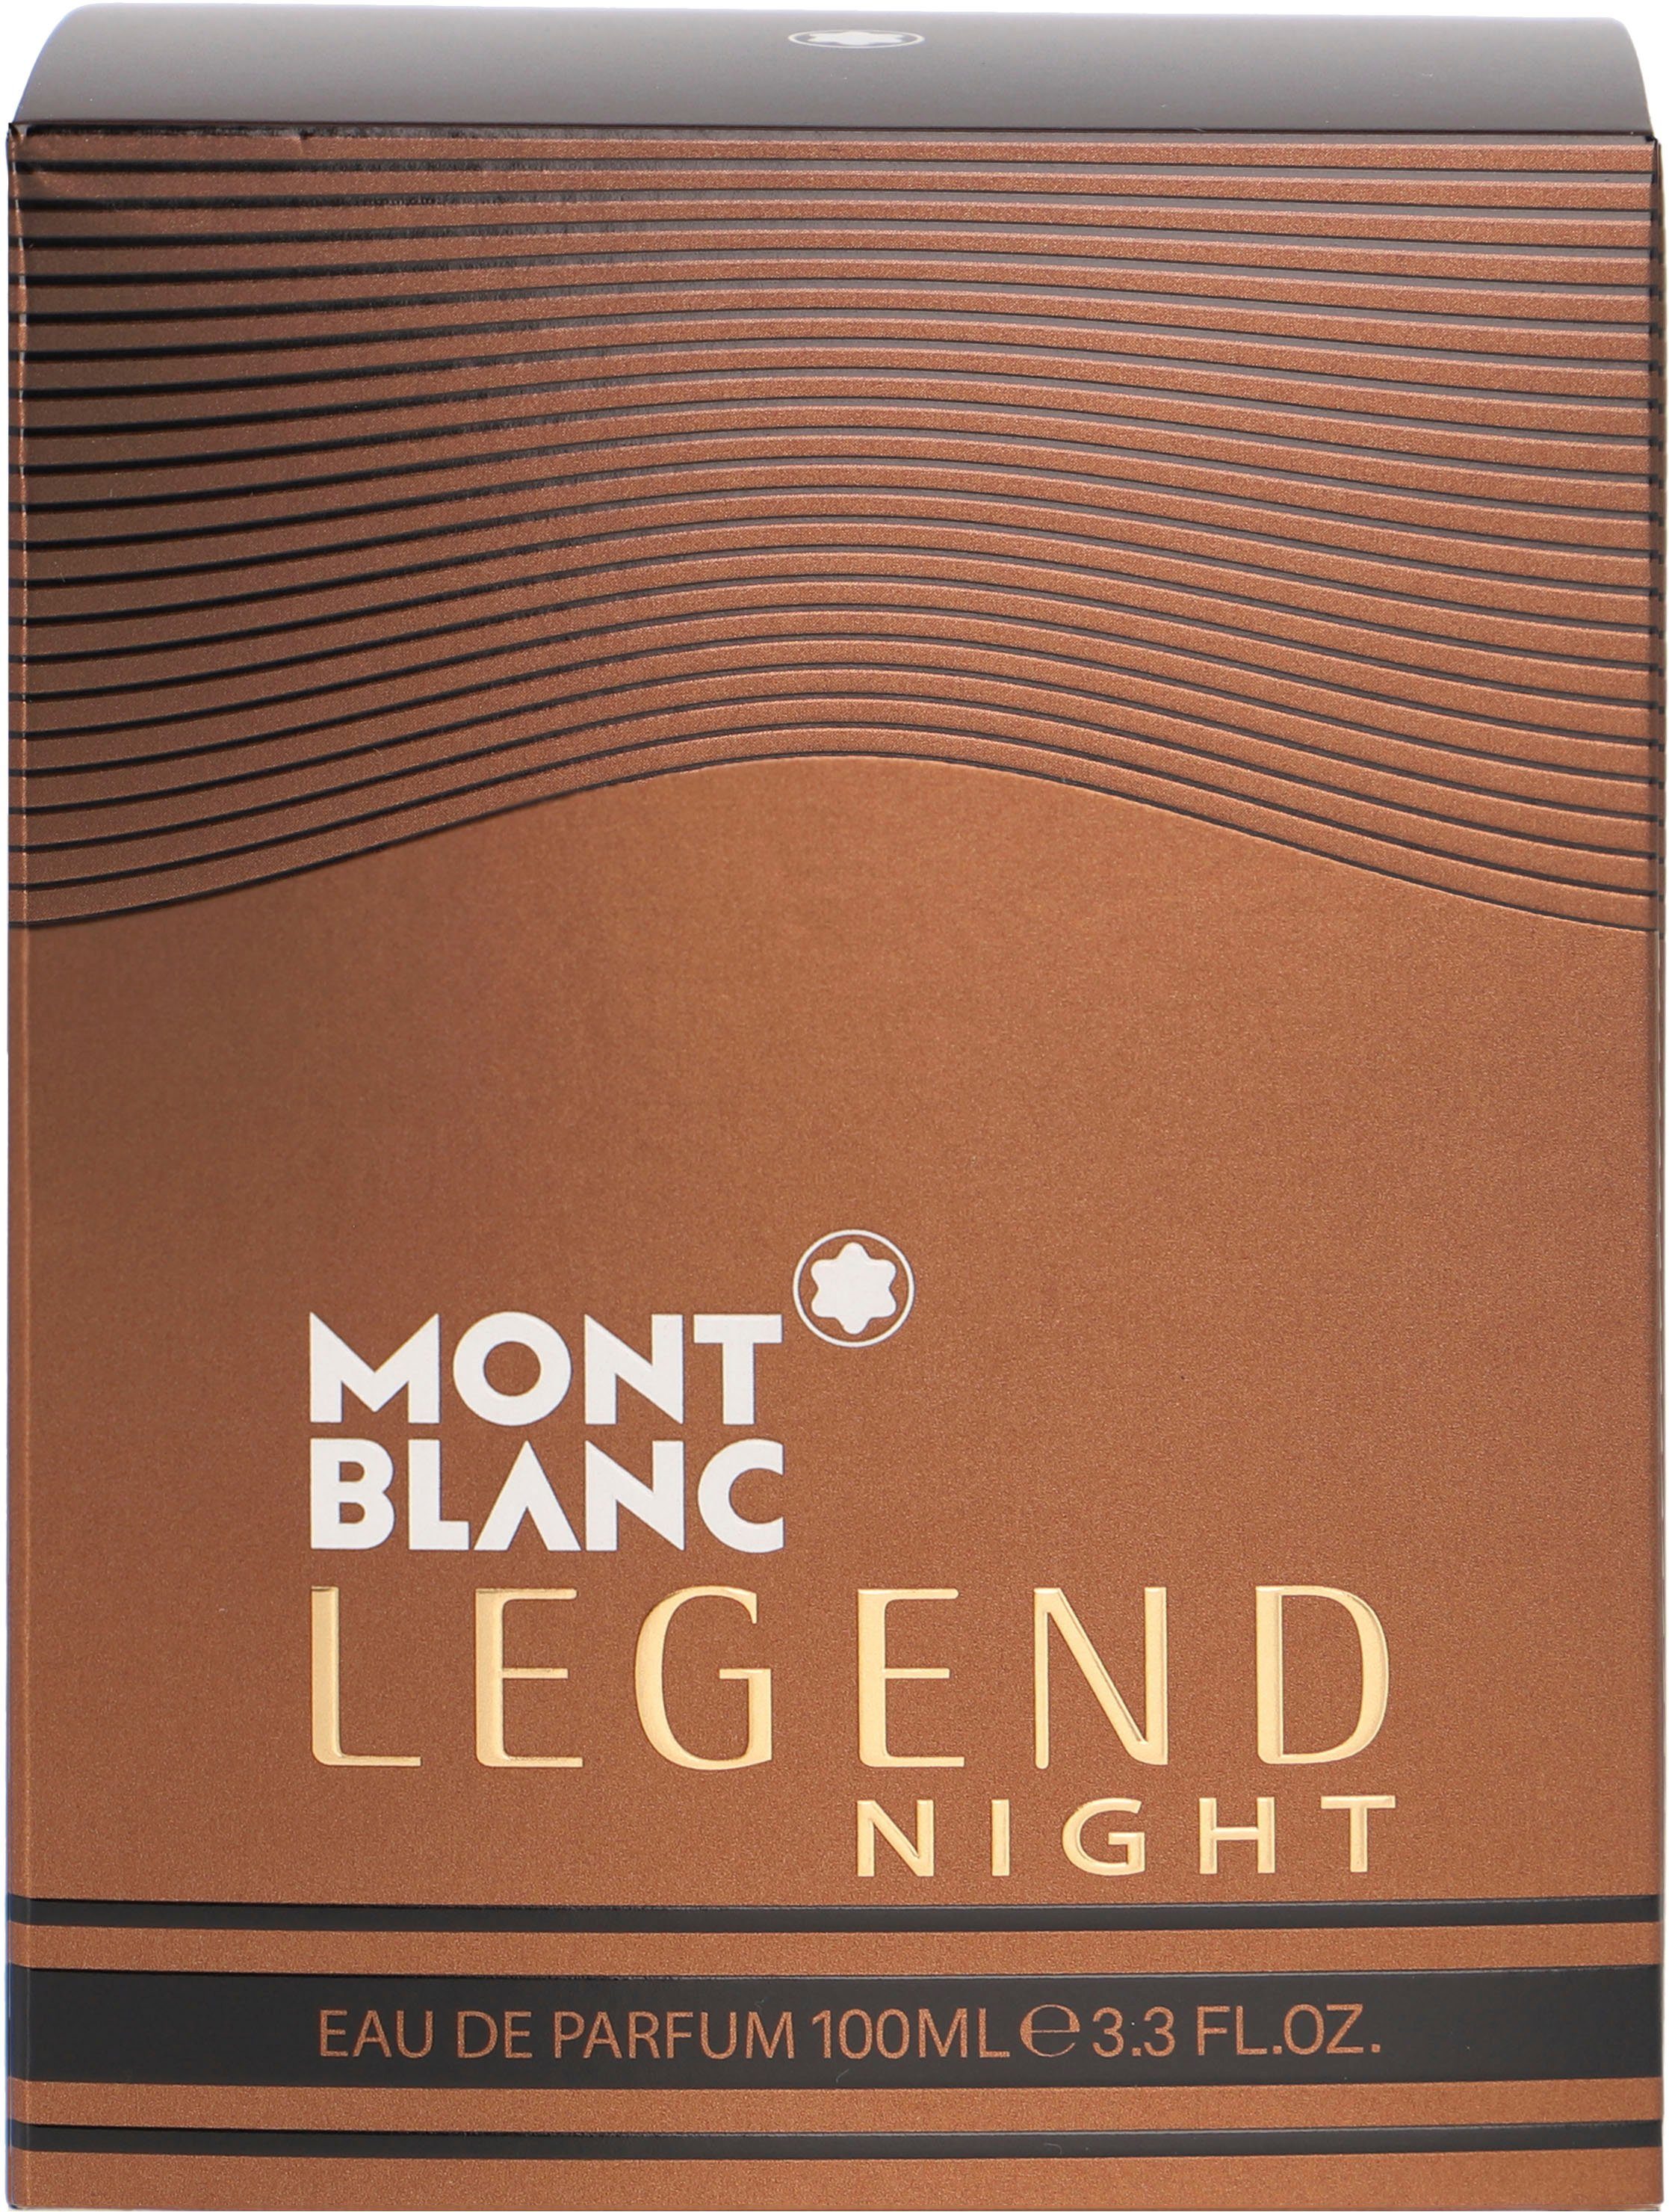 MONTBLANC Eau Parfum de Legend Night